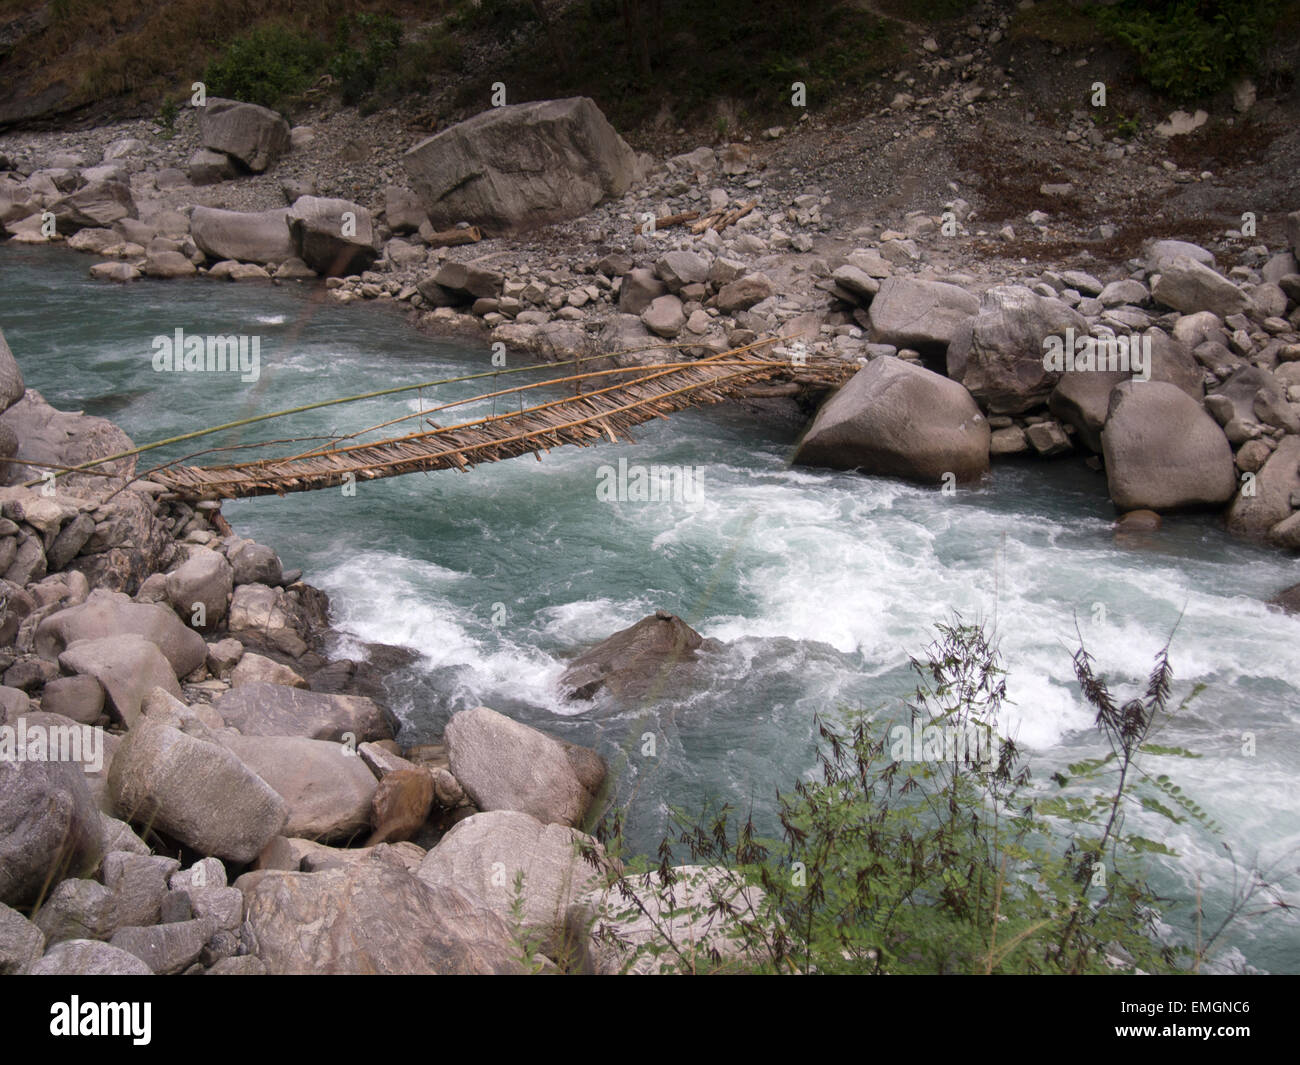 Pont en bois traditionnel plus de ruisseau de montagne Himalaya Lukla au Népal en Asie. Précaire rachitique Banque D'Images